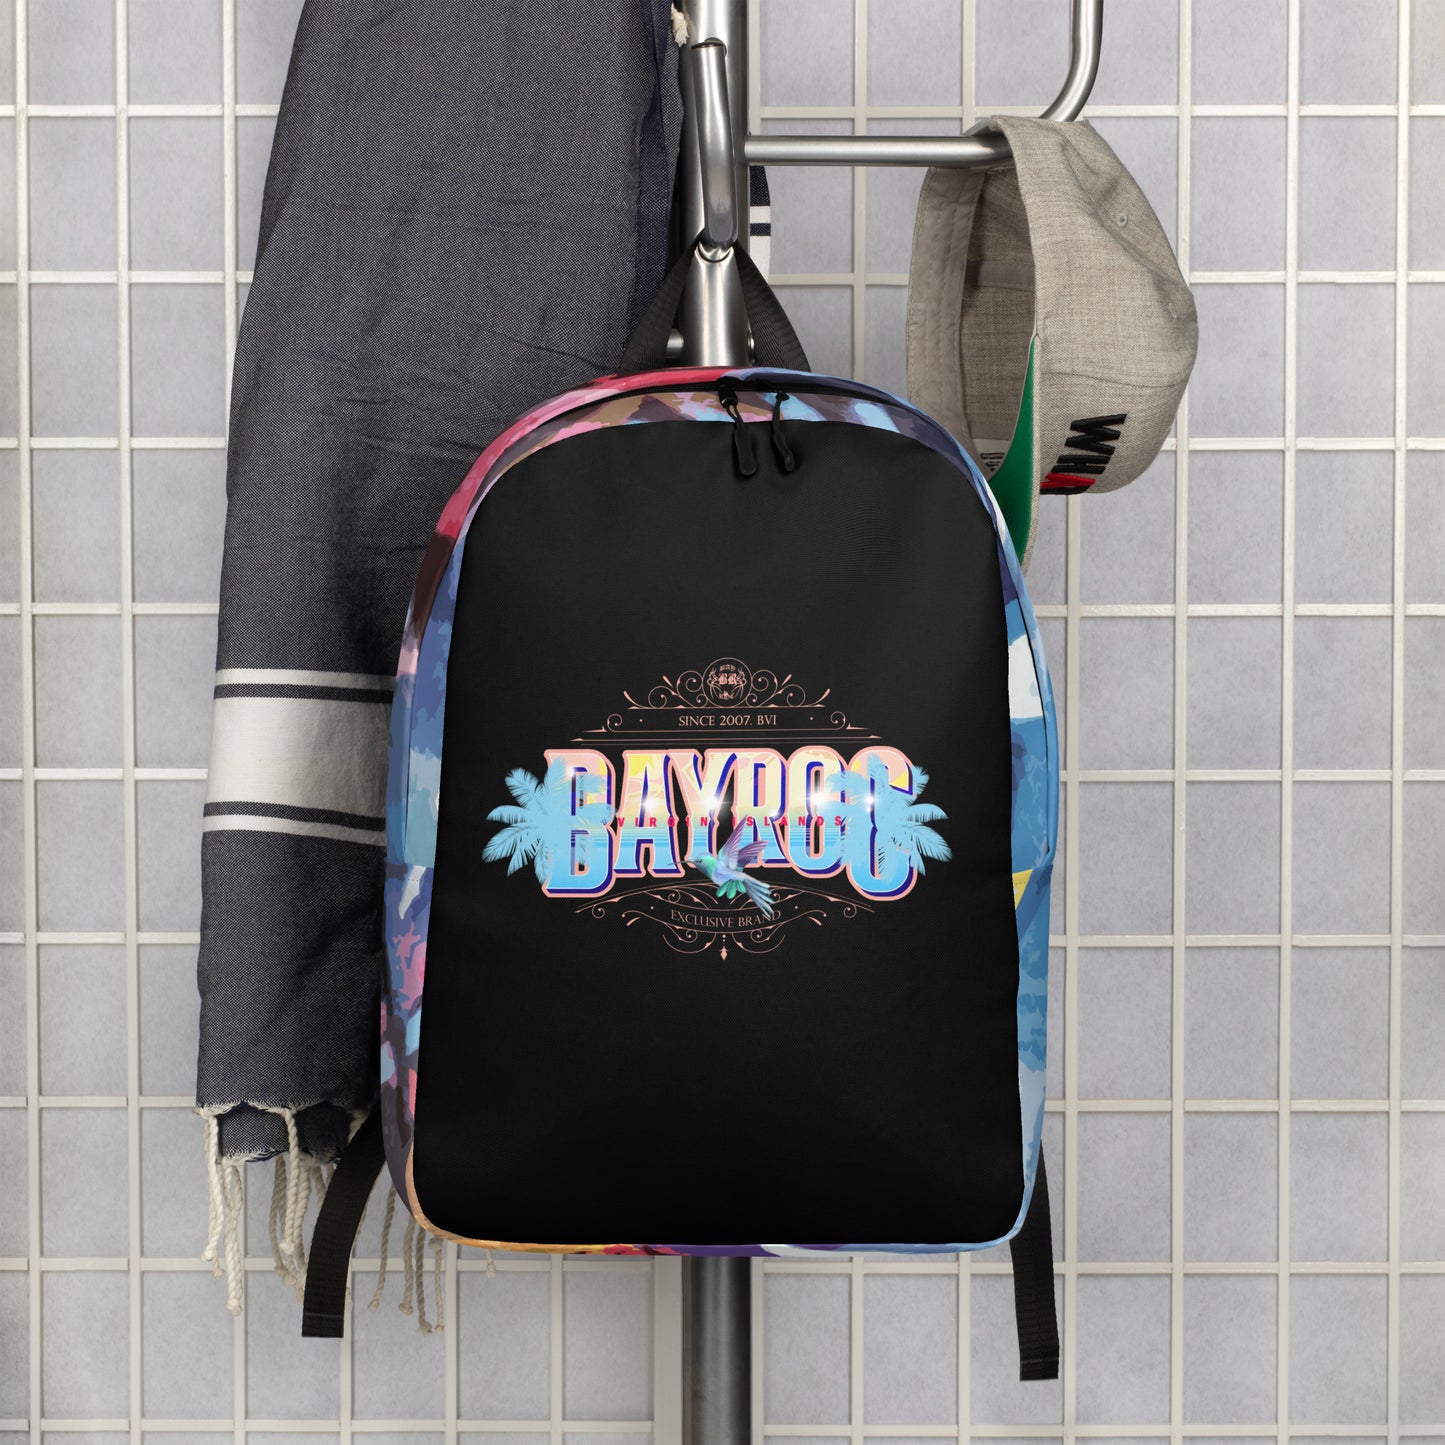 Sandsea Minimalist Backpack